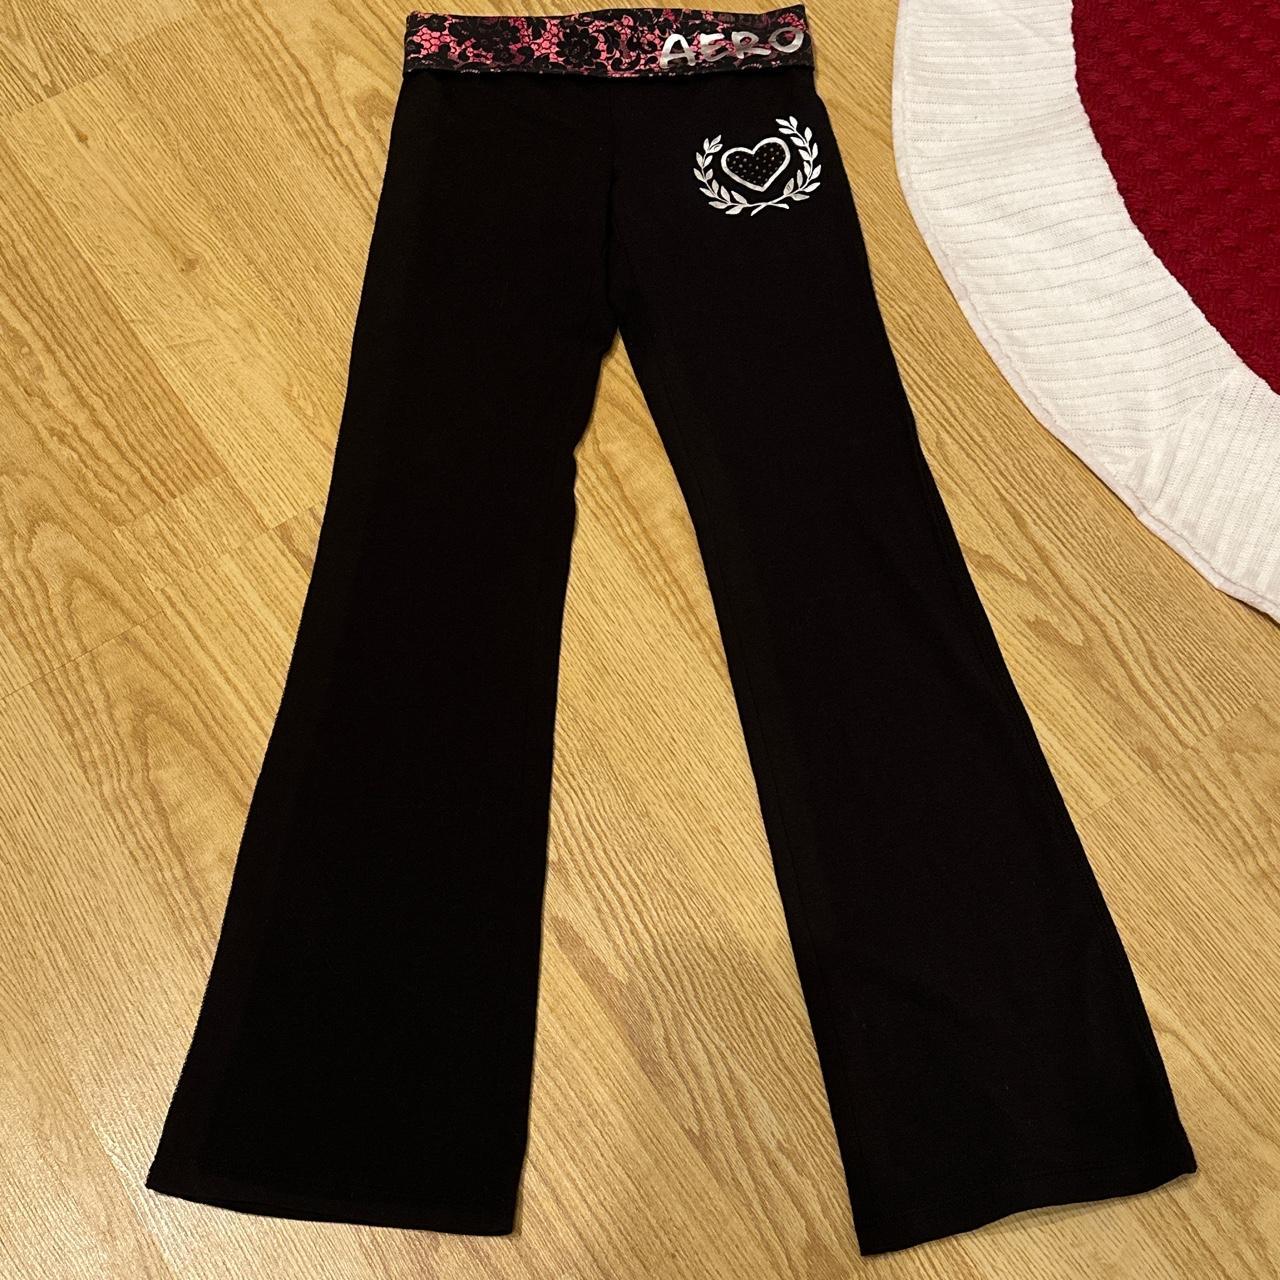 Rare vs pink cheetah foldover yoga pants Skinny - Depop